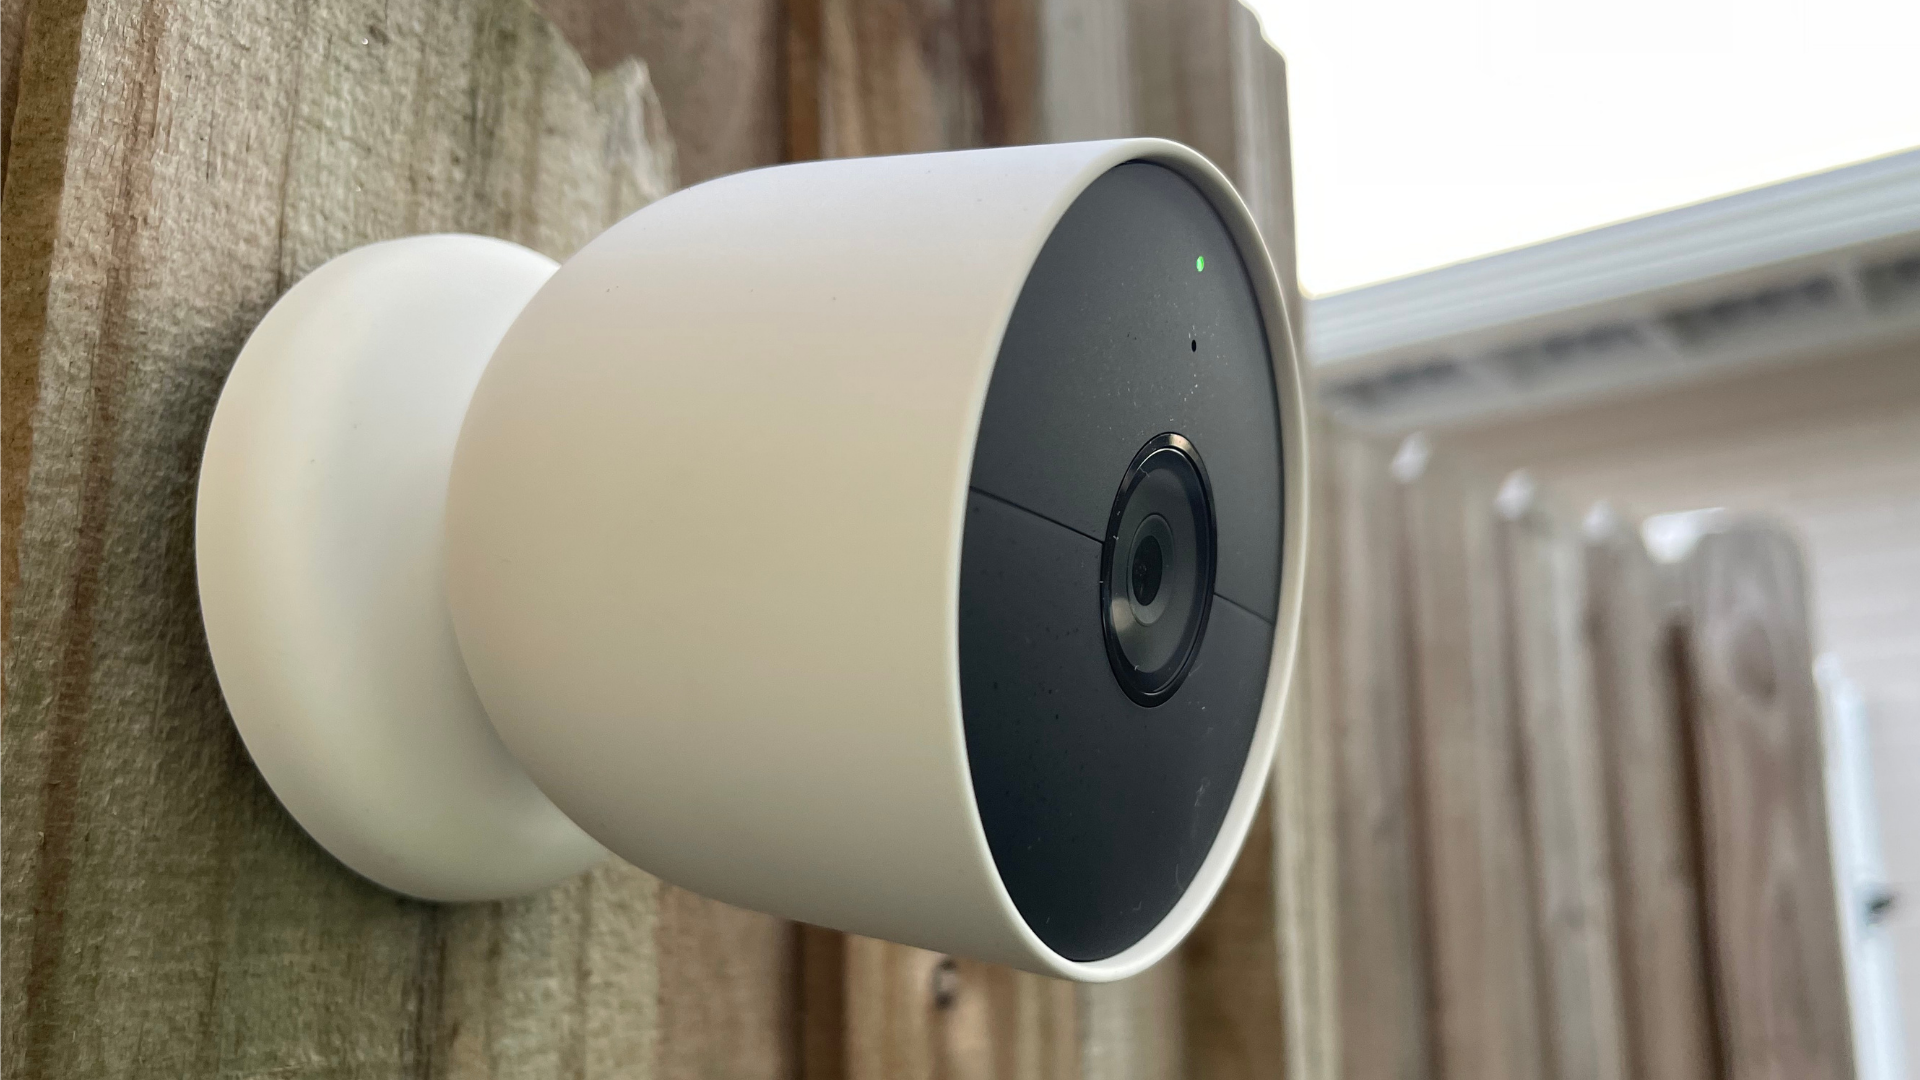 מצלמת הקן (סוללה) תלויה על גדר עץ